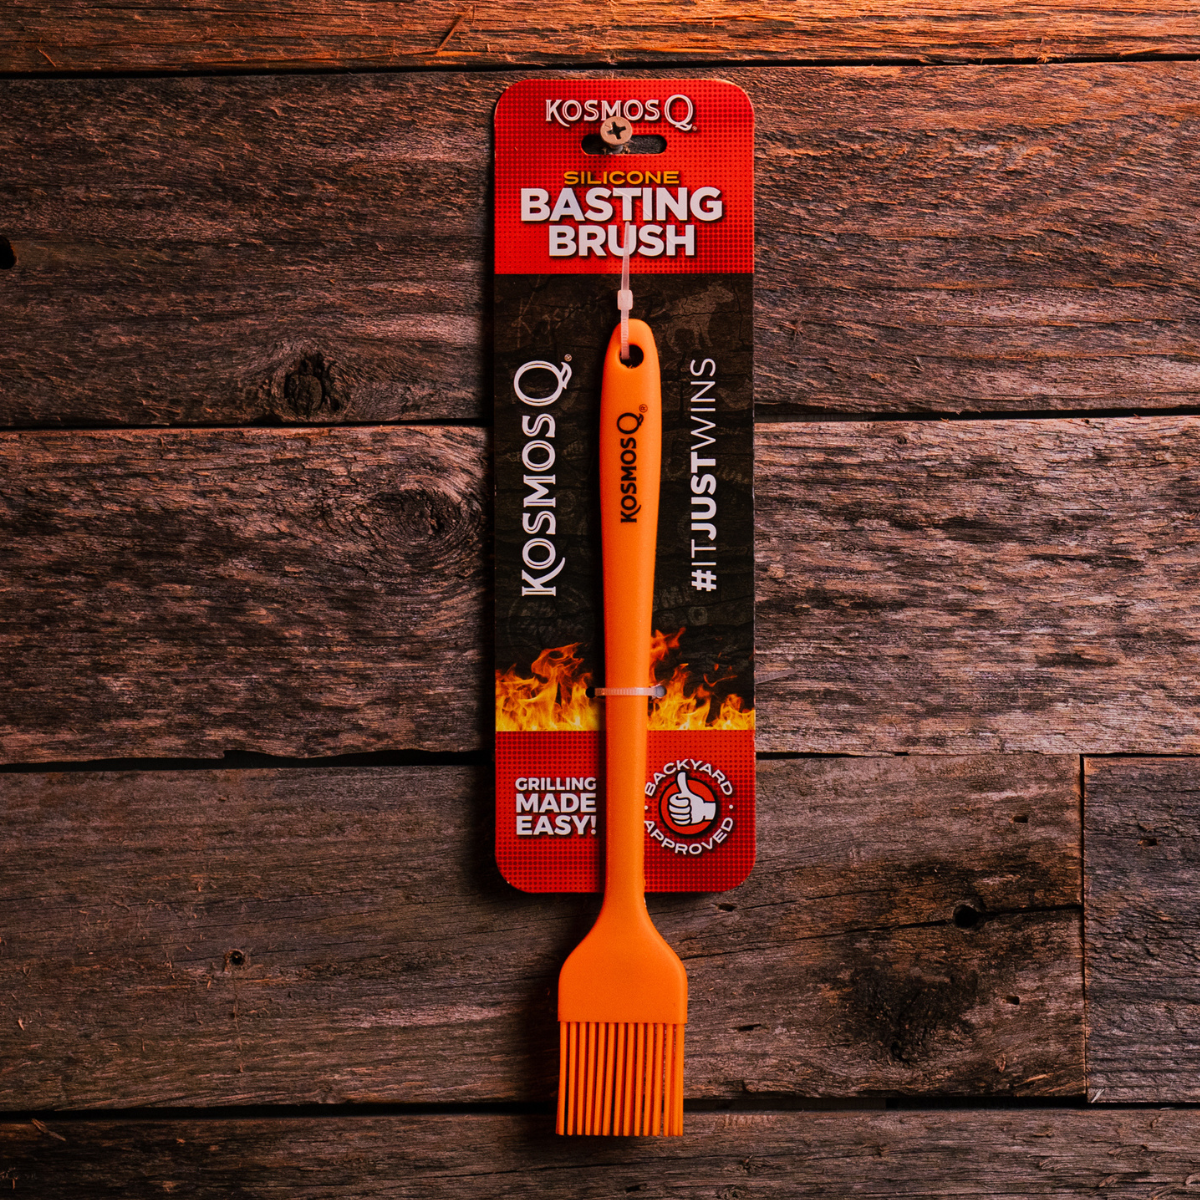 BBQ Basting Brush